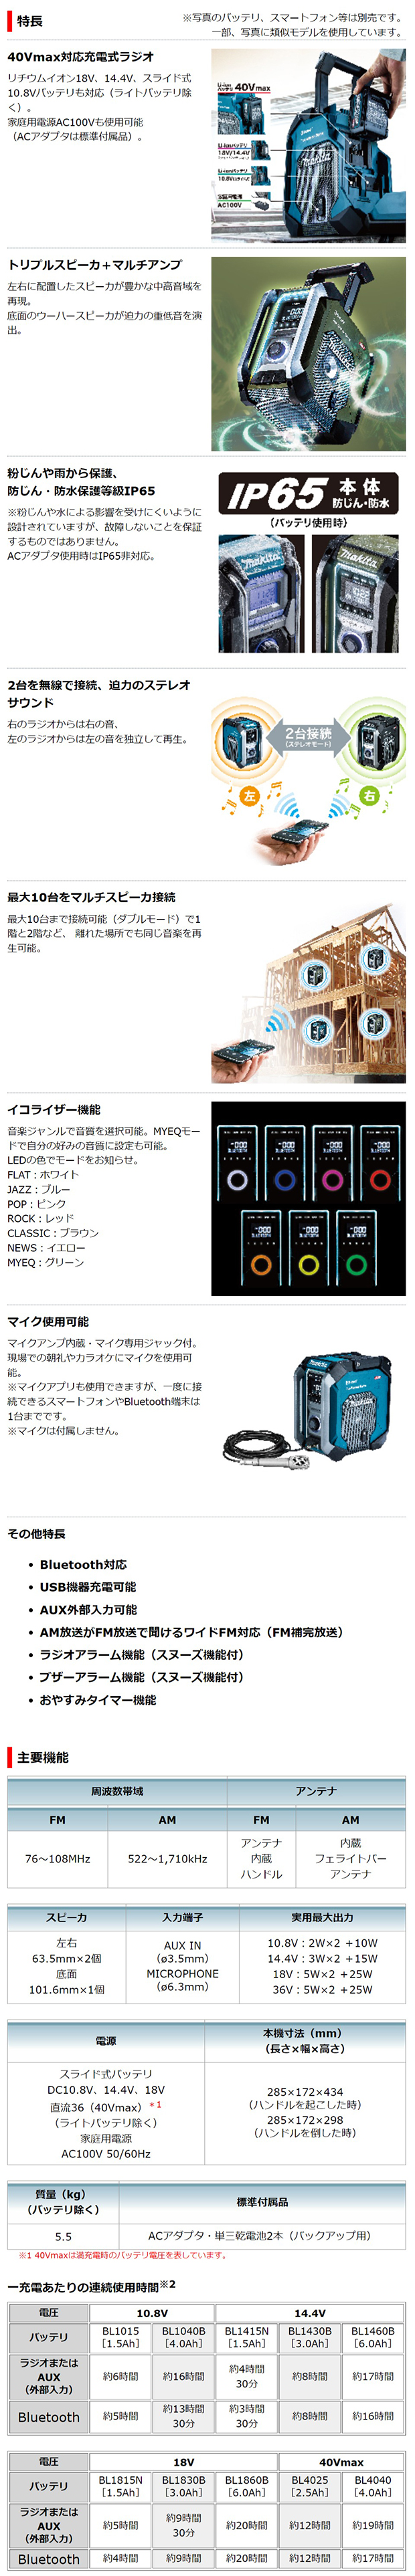 マキタ 40Vmax充電式ラジオMR005G【トリプルスピーカー+マルチアンプ】